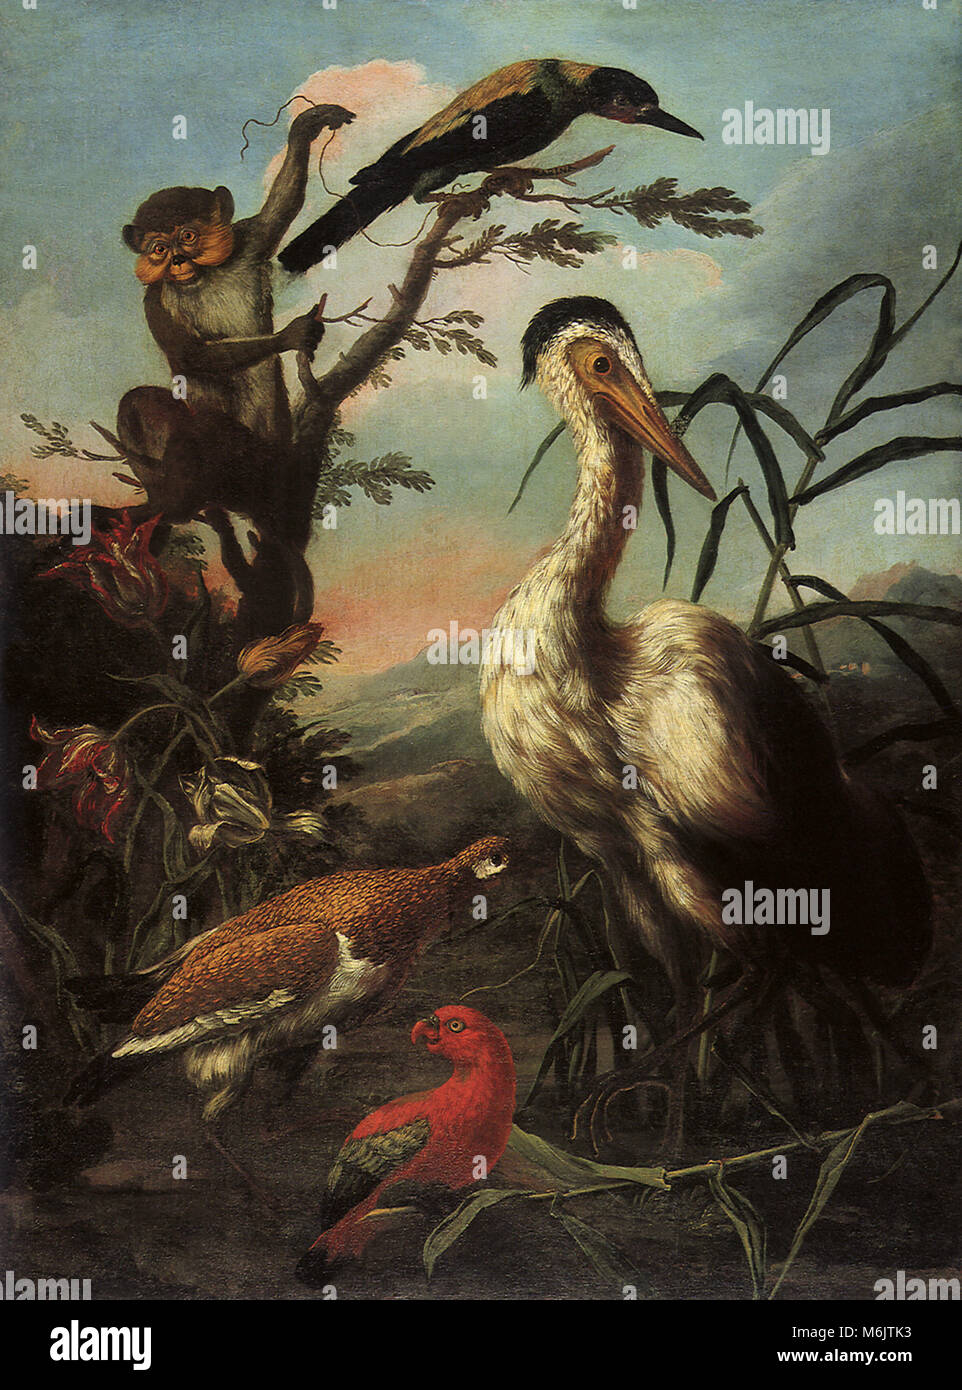 Un singe de Barbarie, un geai, une cigogne, un perroquet, et une poule Sauvage, Scacciati, Pietro Neri, 1734. Banque D'Images